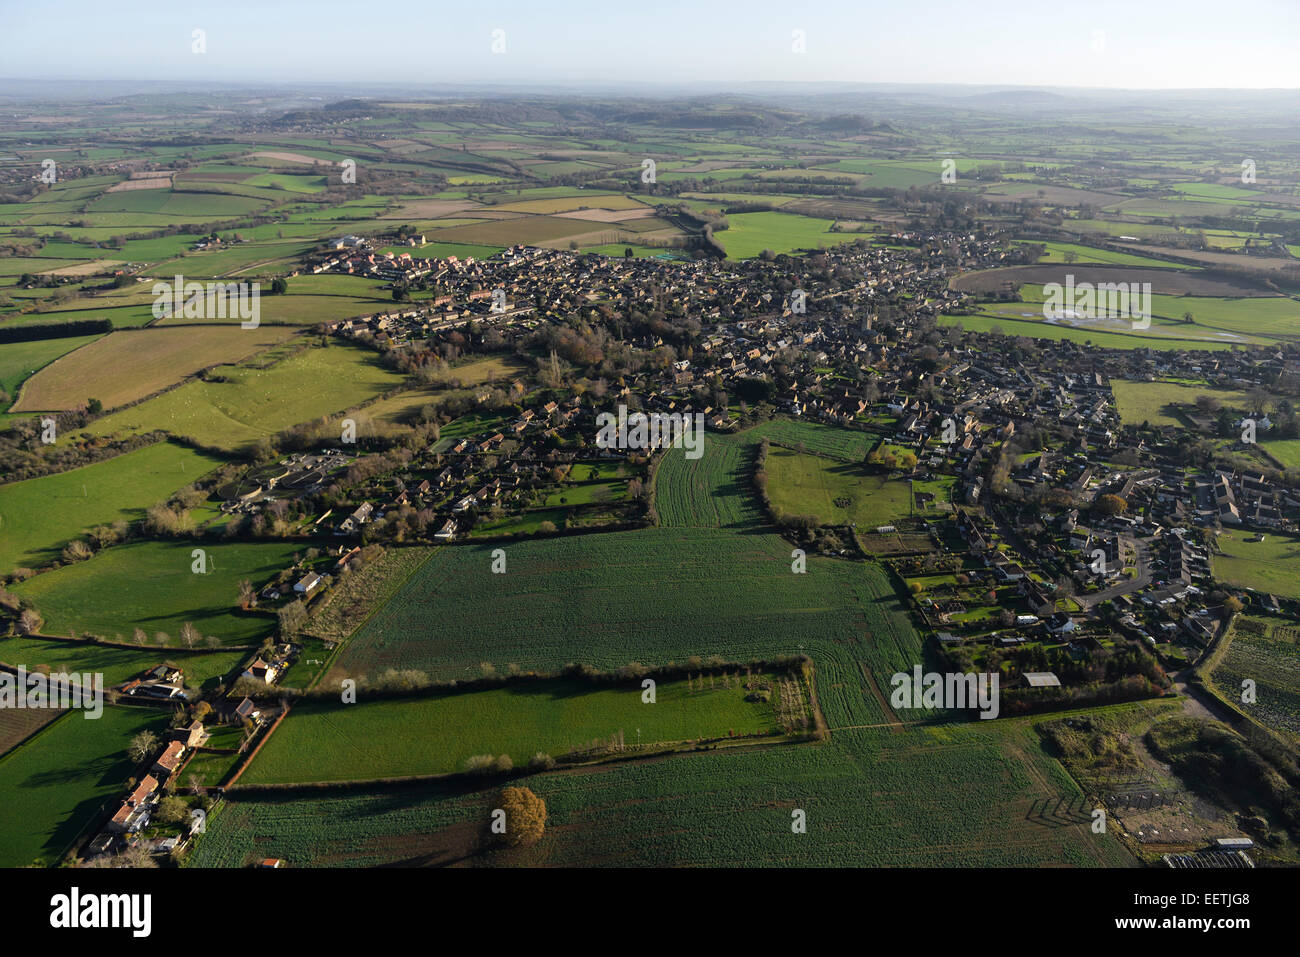 Una vista aérea que muestra la aldea de Somerset South Petherton en contexto con el paisaje rural circundante Foto de stock